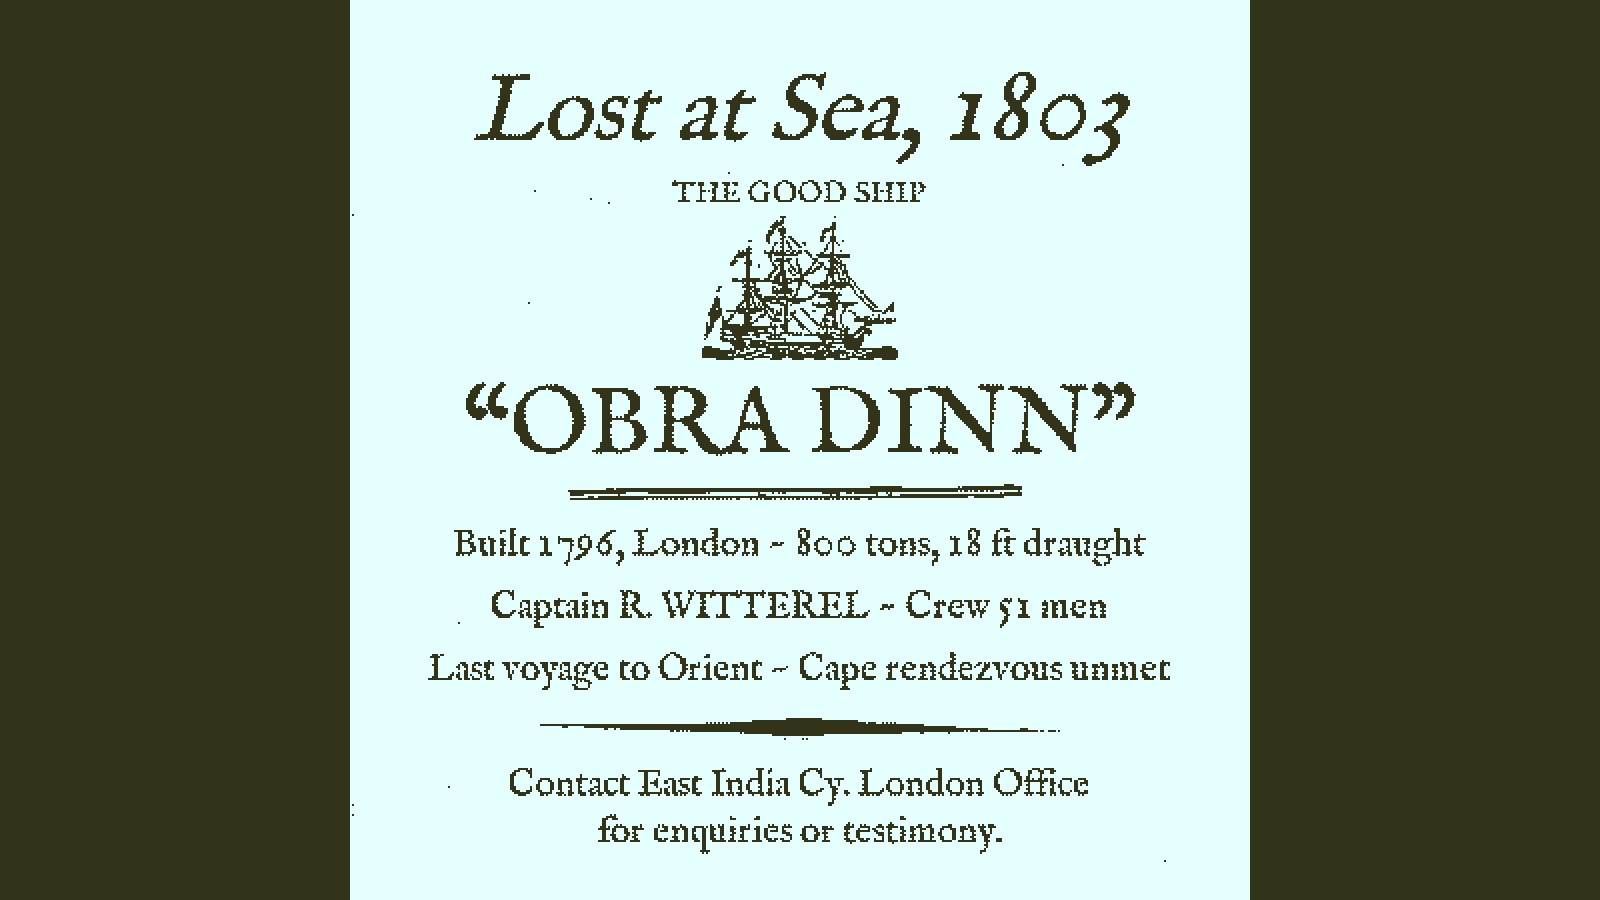 Return of the Obra Dinn Free Download